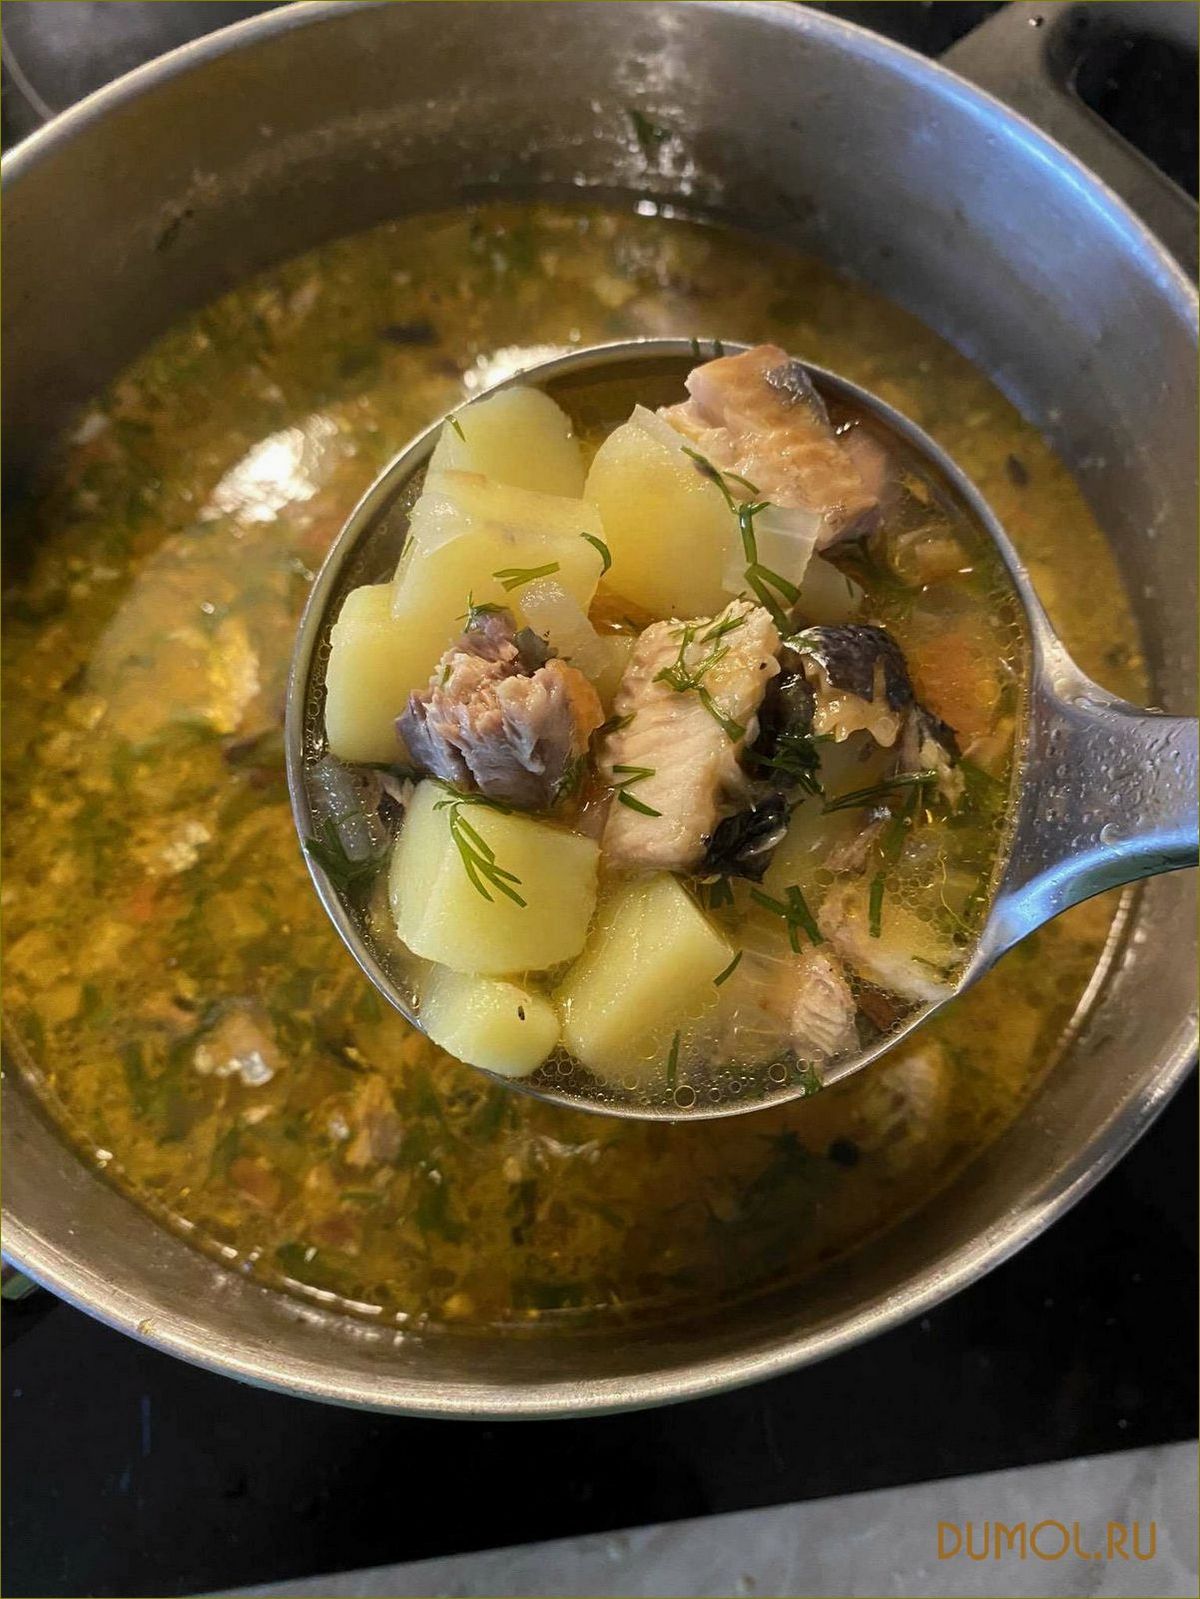 Сайровый суп: рецепты и полезные свойства